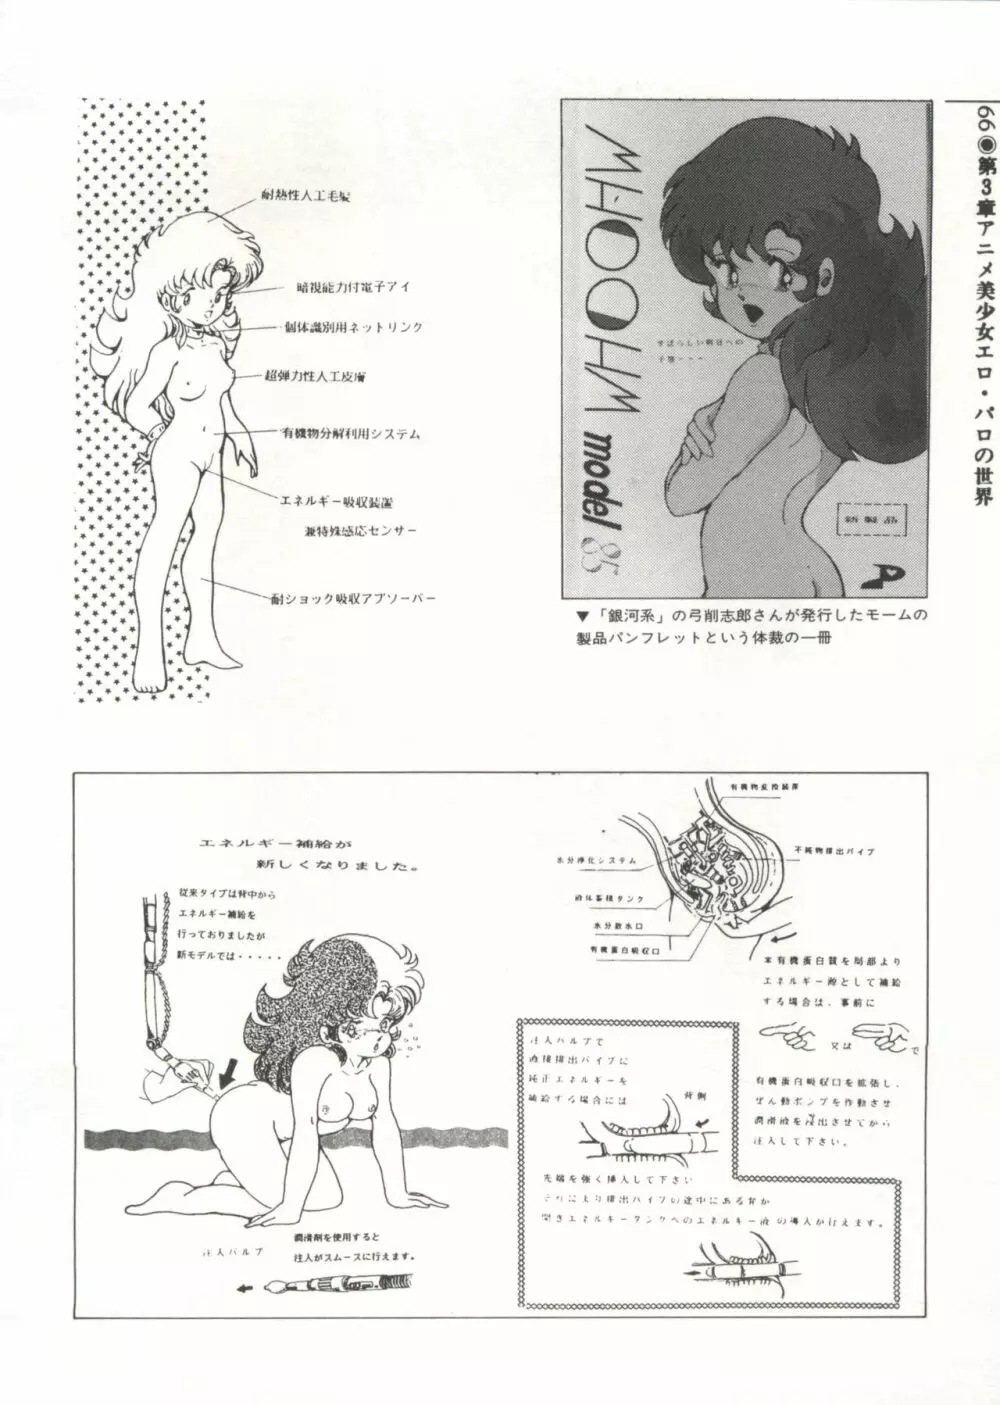 [Anthology] 美少女症候群(2) Lolita syndrome (よろず) 69ページ